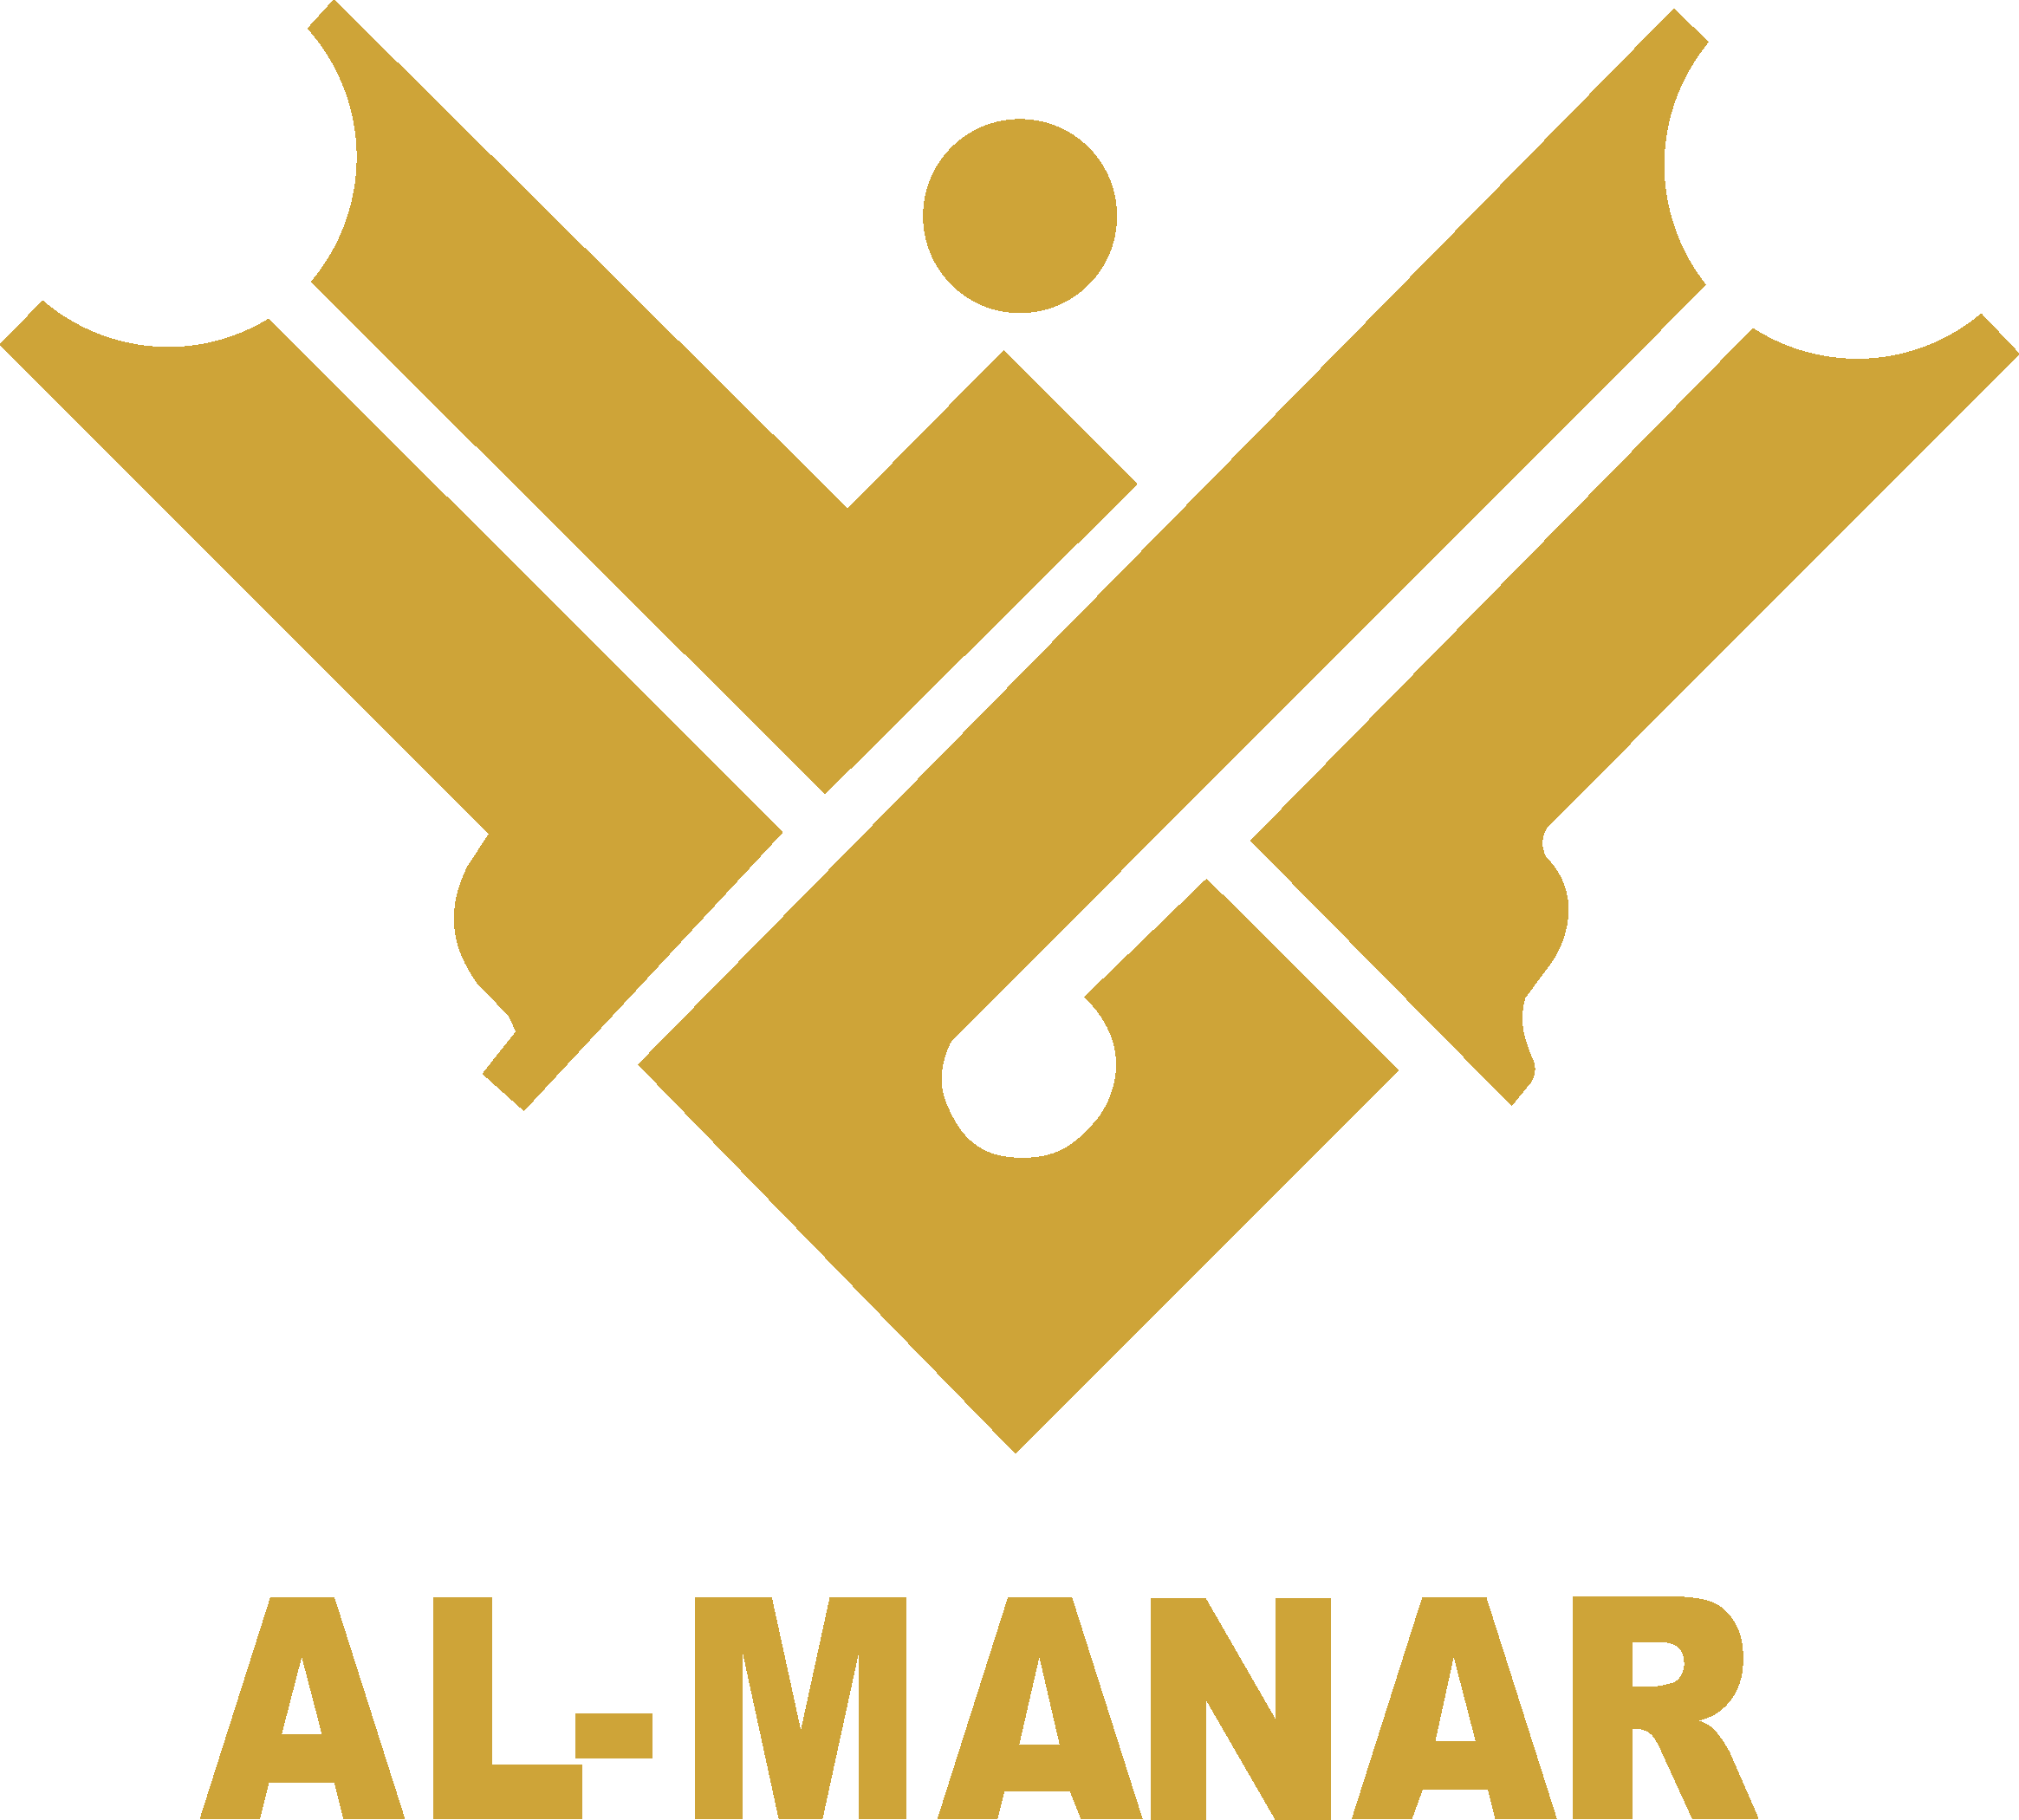 Al-manar Tv Logo - Al Manar Tv Logo Clipart (2330x2100), Png Download